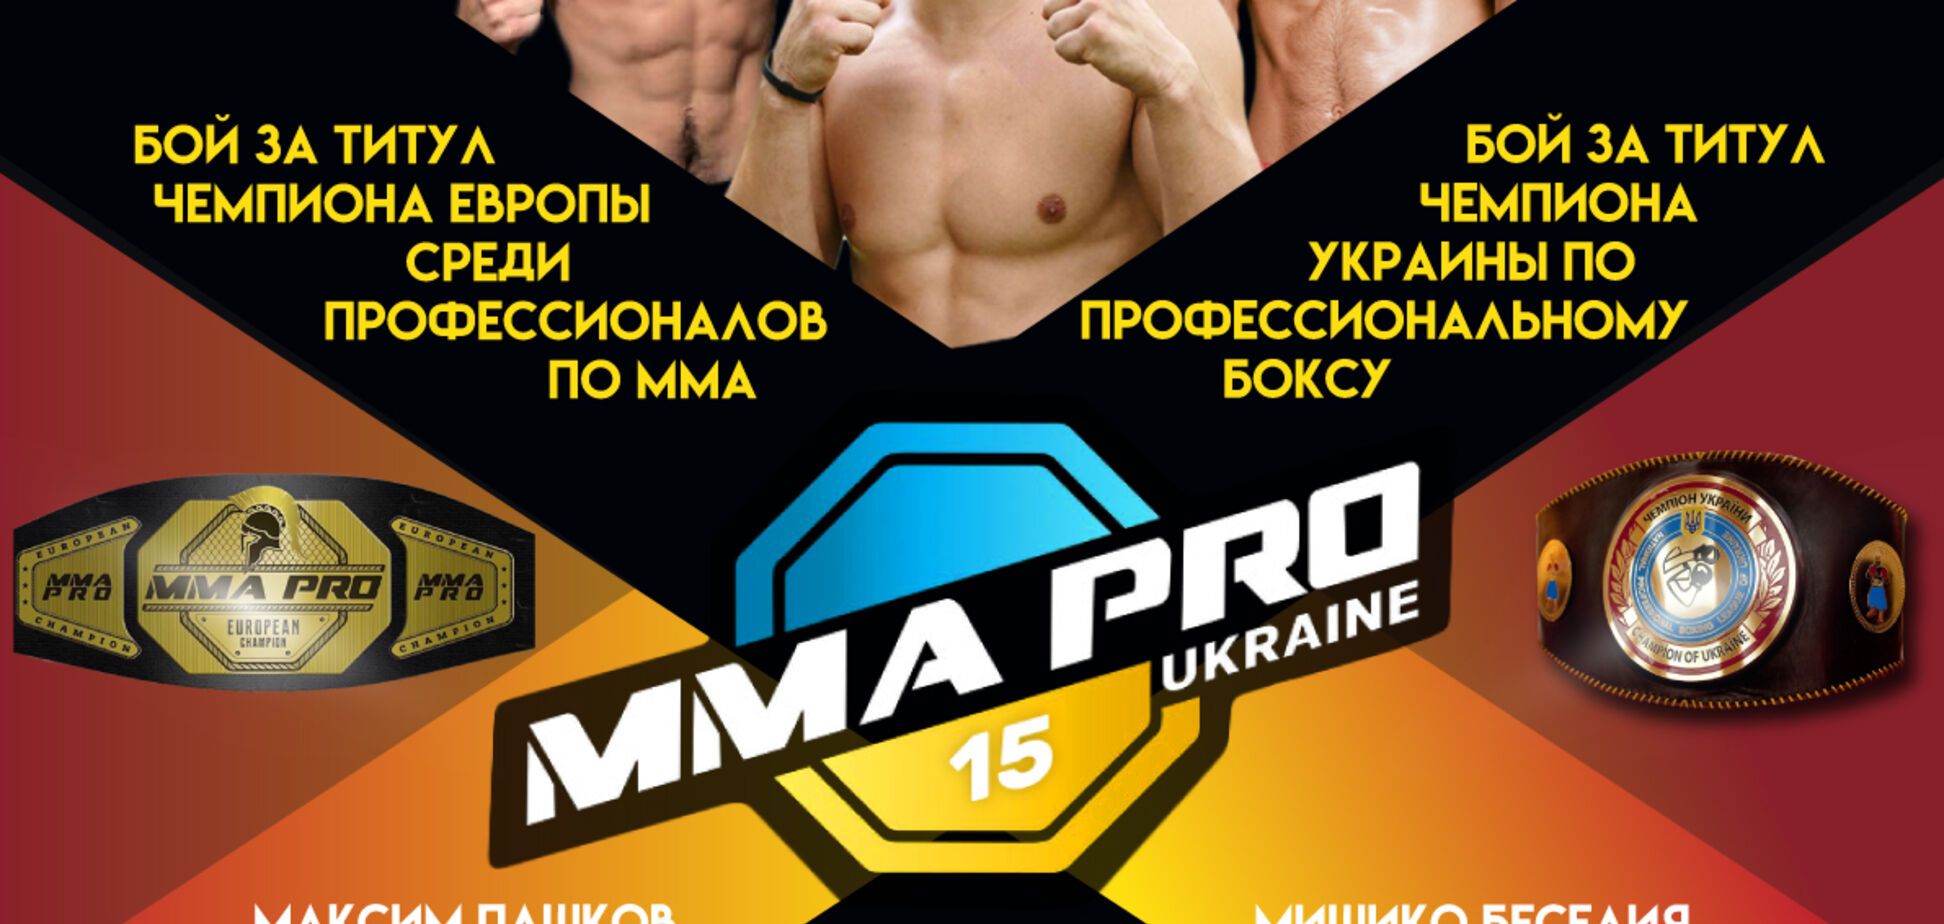 Международный турнир MMA PRO 15: объявлены противники украинских бойцов